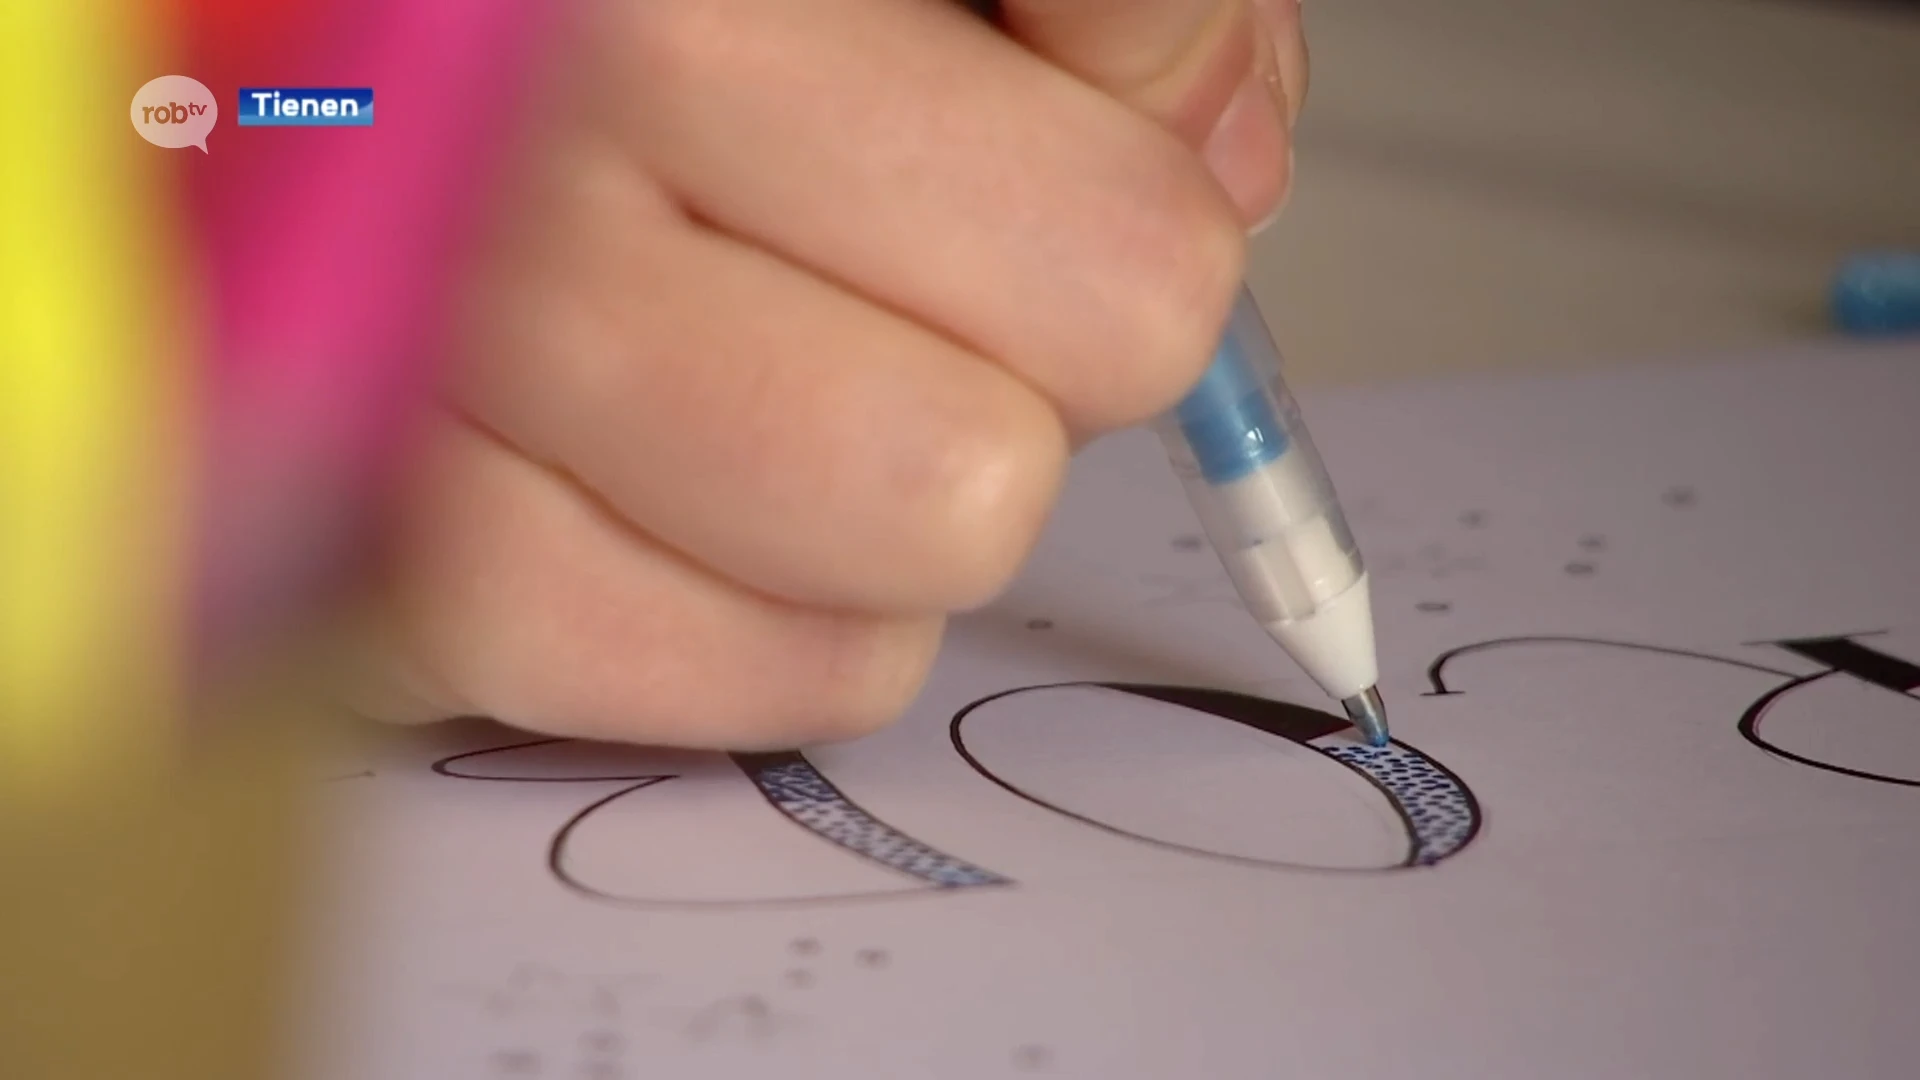 De kunst van het handletteren: Cynthia Vertessen uit Tienen leert hoe je letters en cijfers mooi kan tekenen